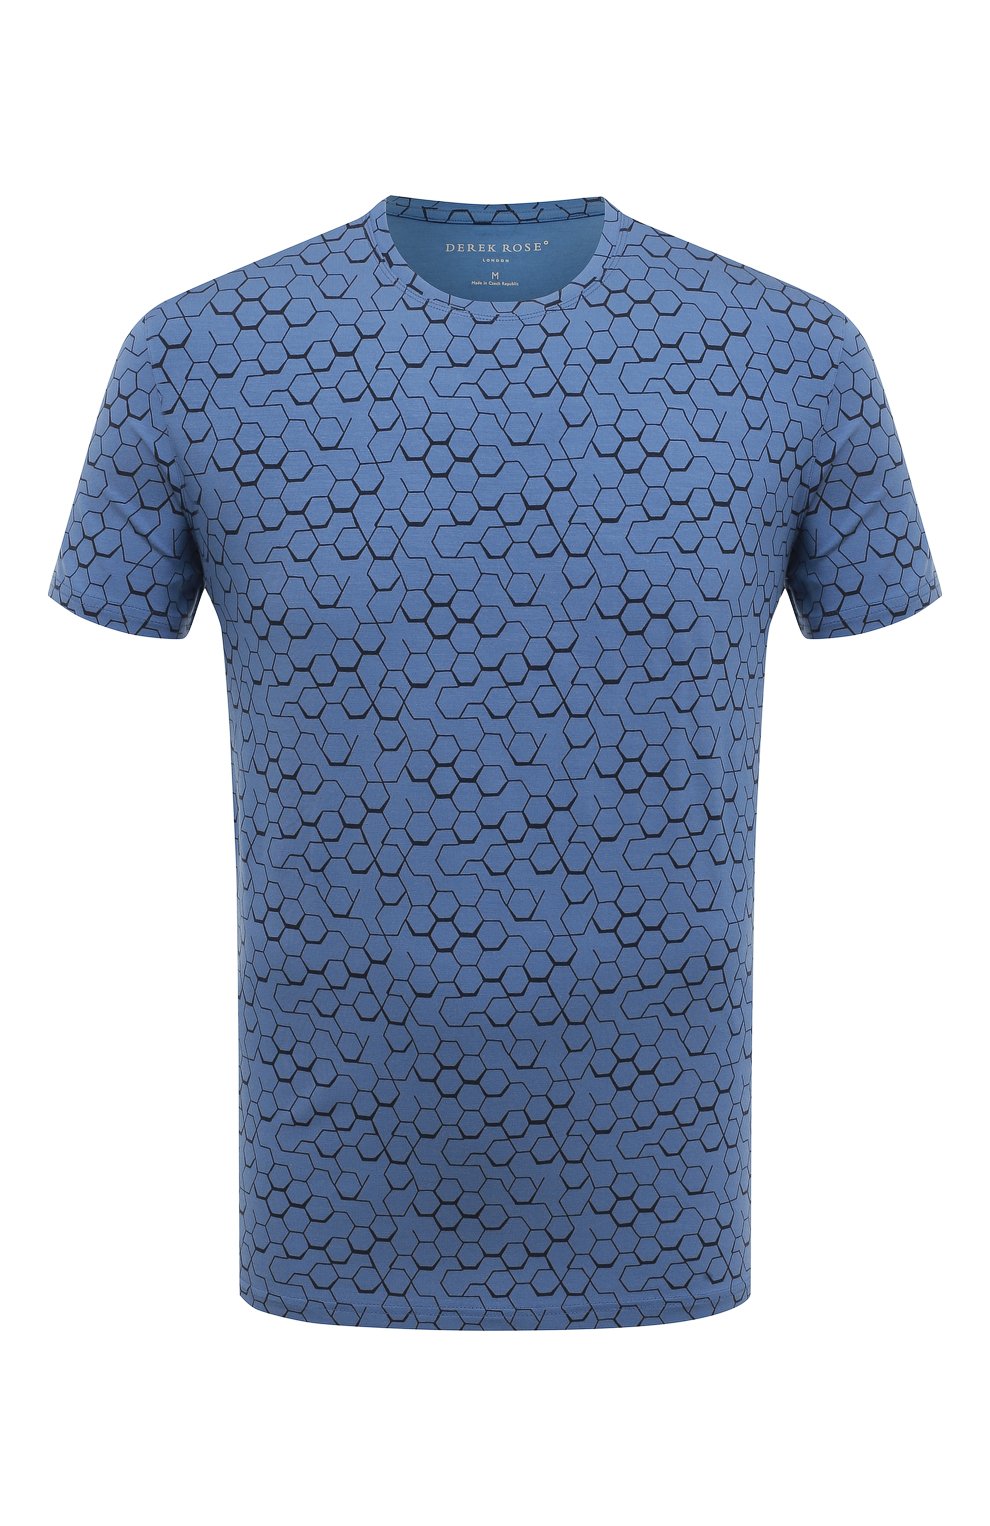 Мужская футболка DEREK ROSE голубого цвета, арт. 3048-L0ND006 | Фото 1 (Кросс-КТ: домашняя одежда; Рукава: Короткие; Материал внешний: Синтетический материал; Длина (для топов): Стандартные)